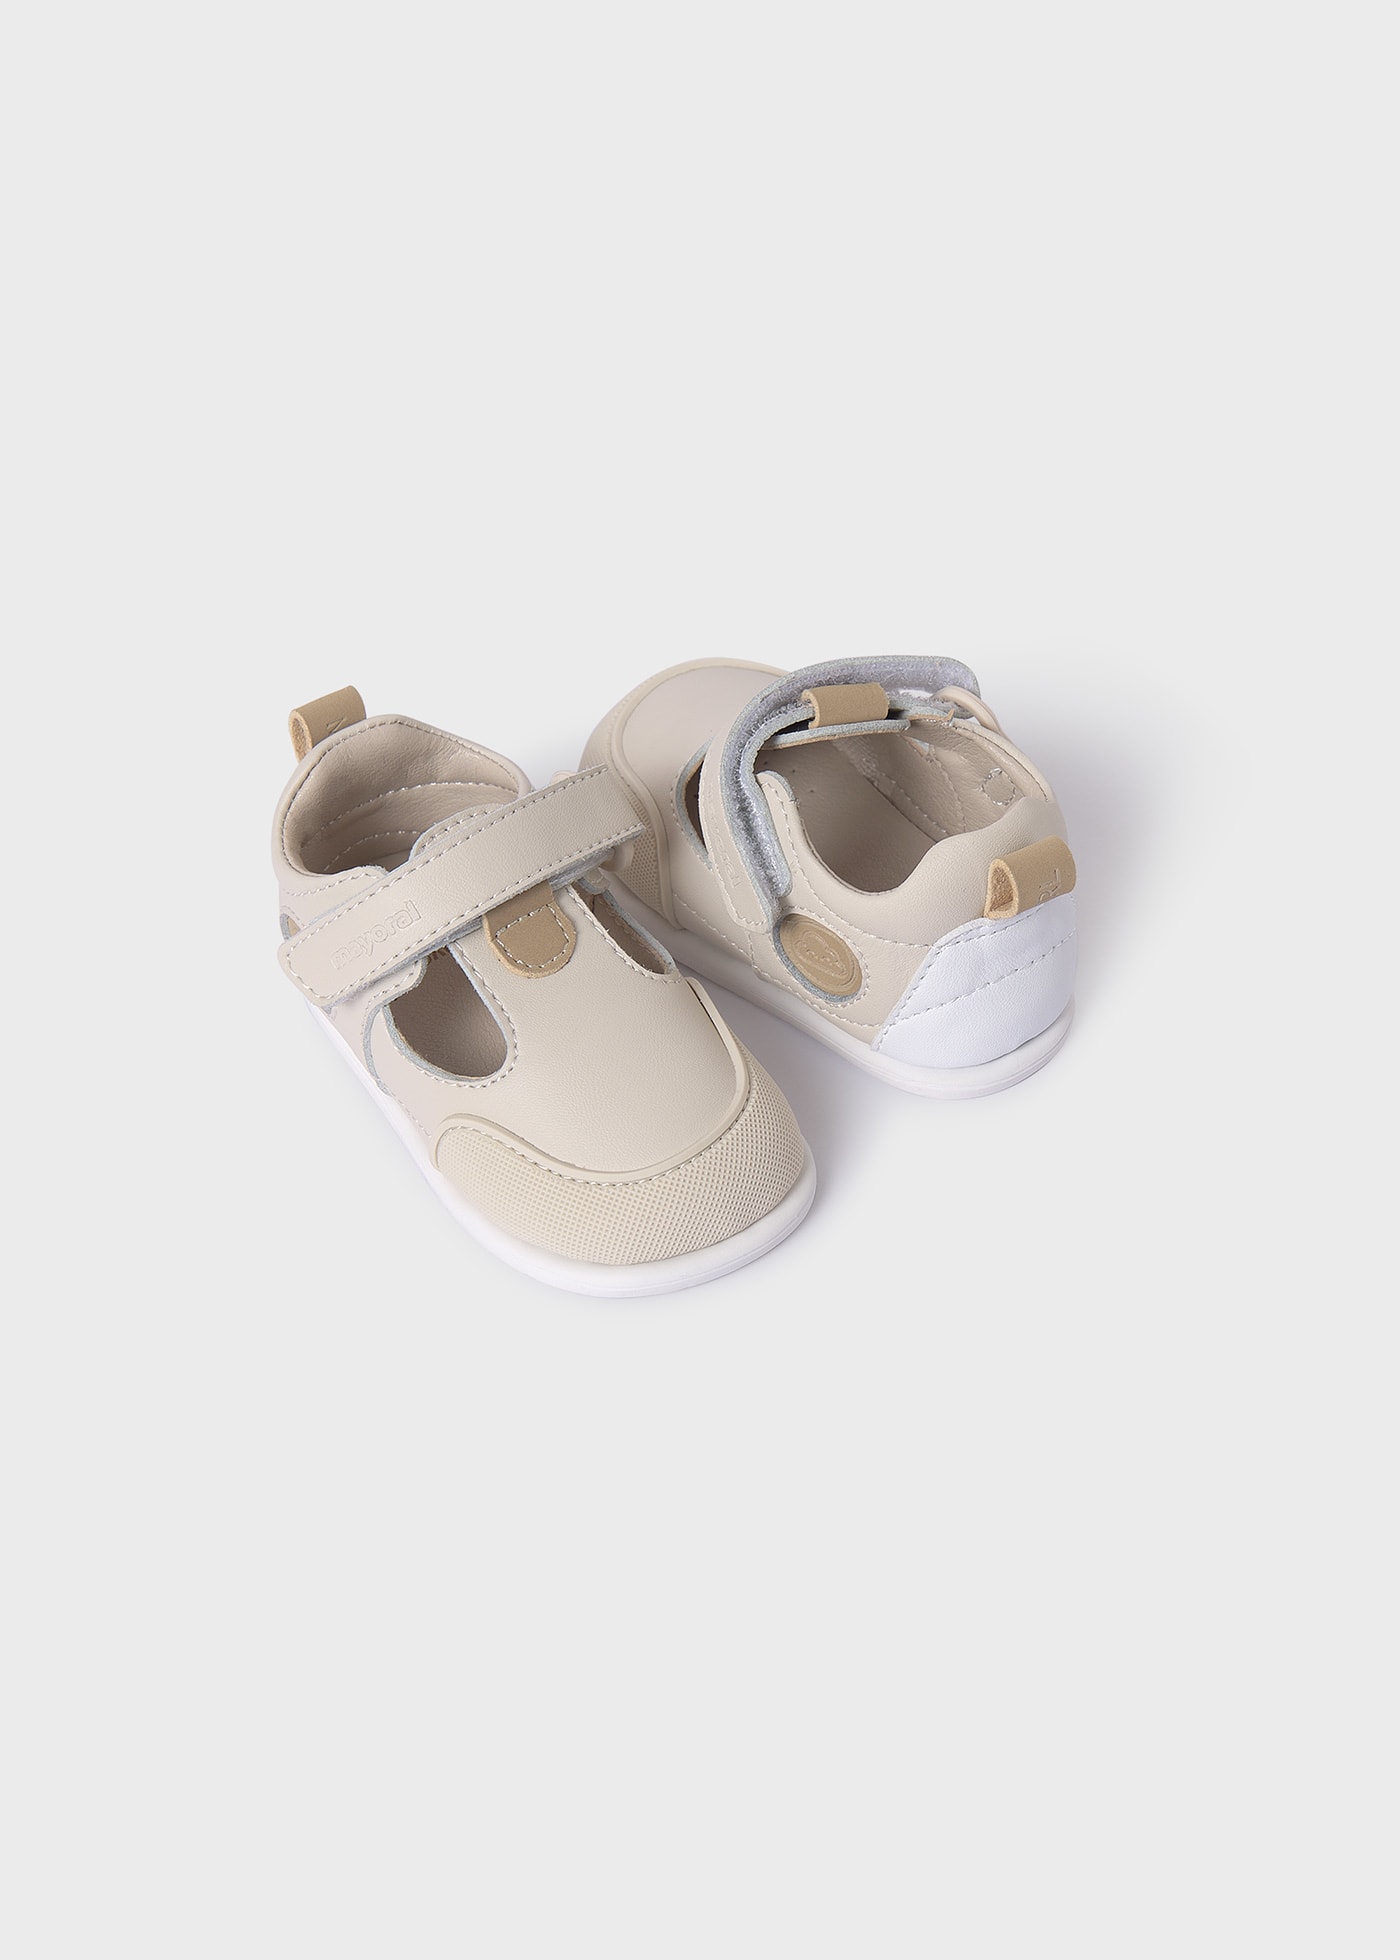 Buty dla niemowlęcia